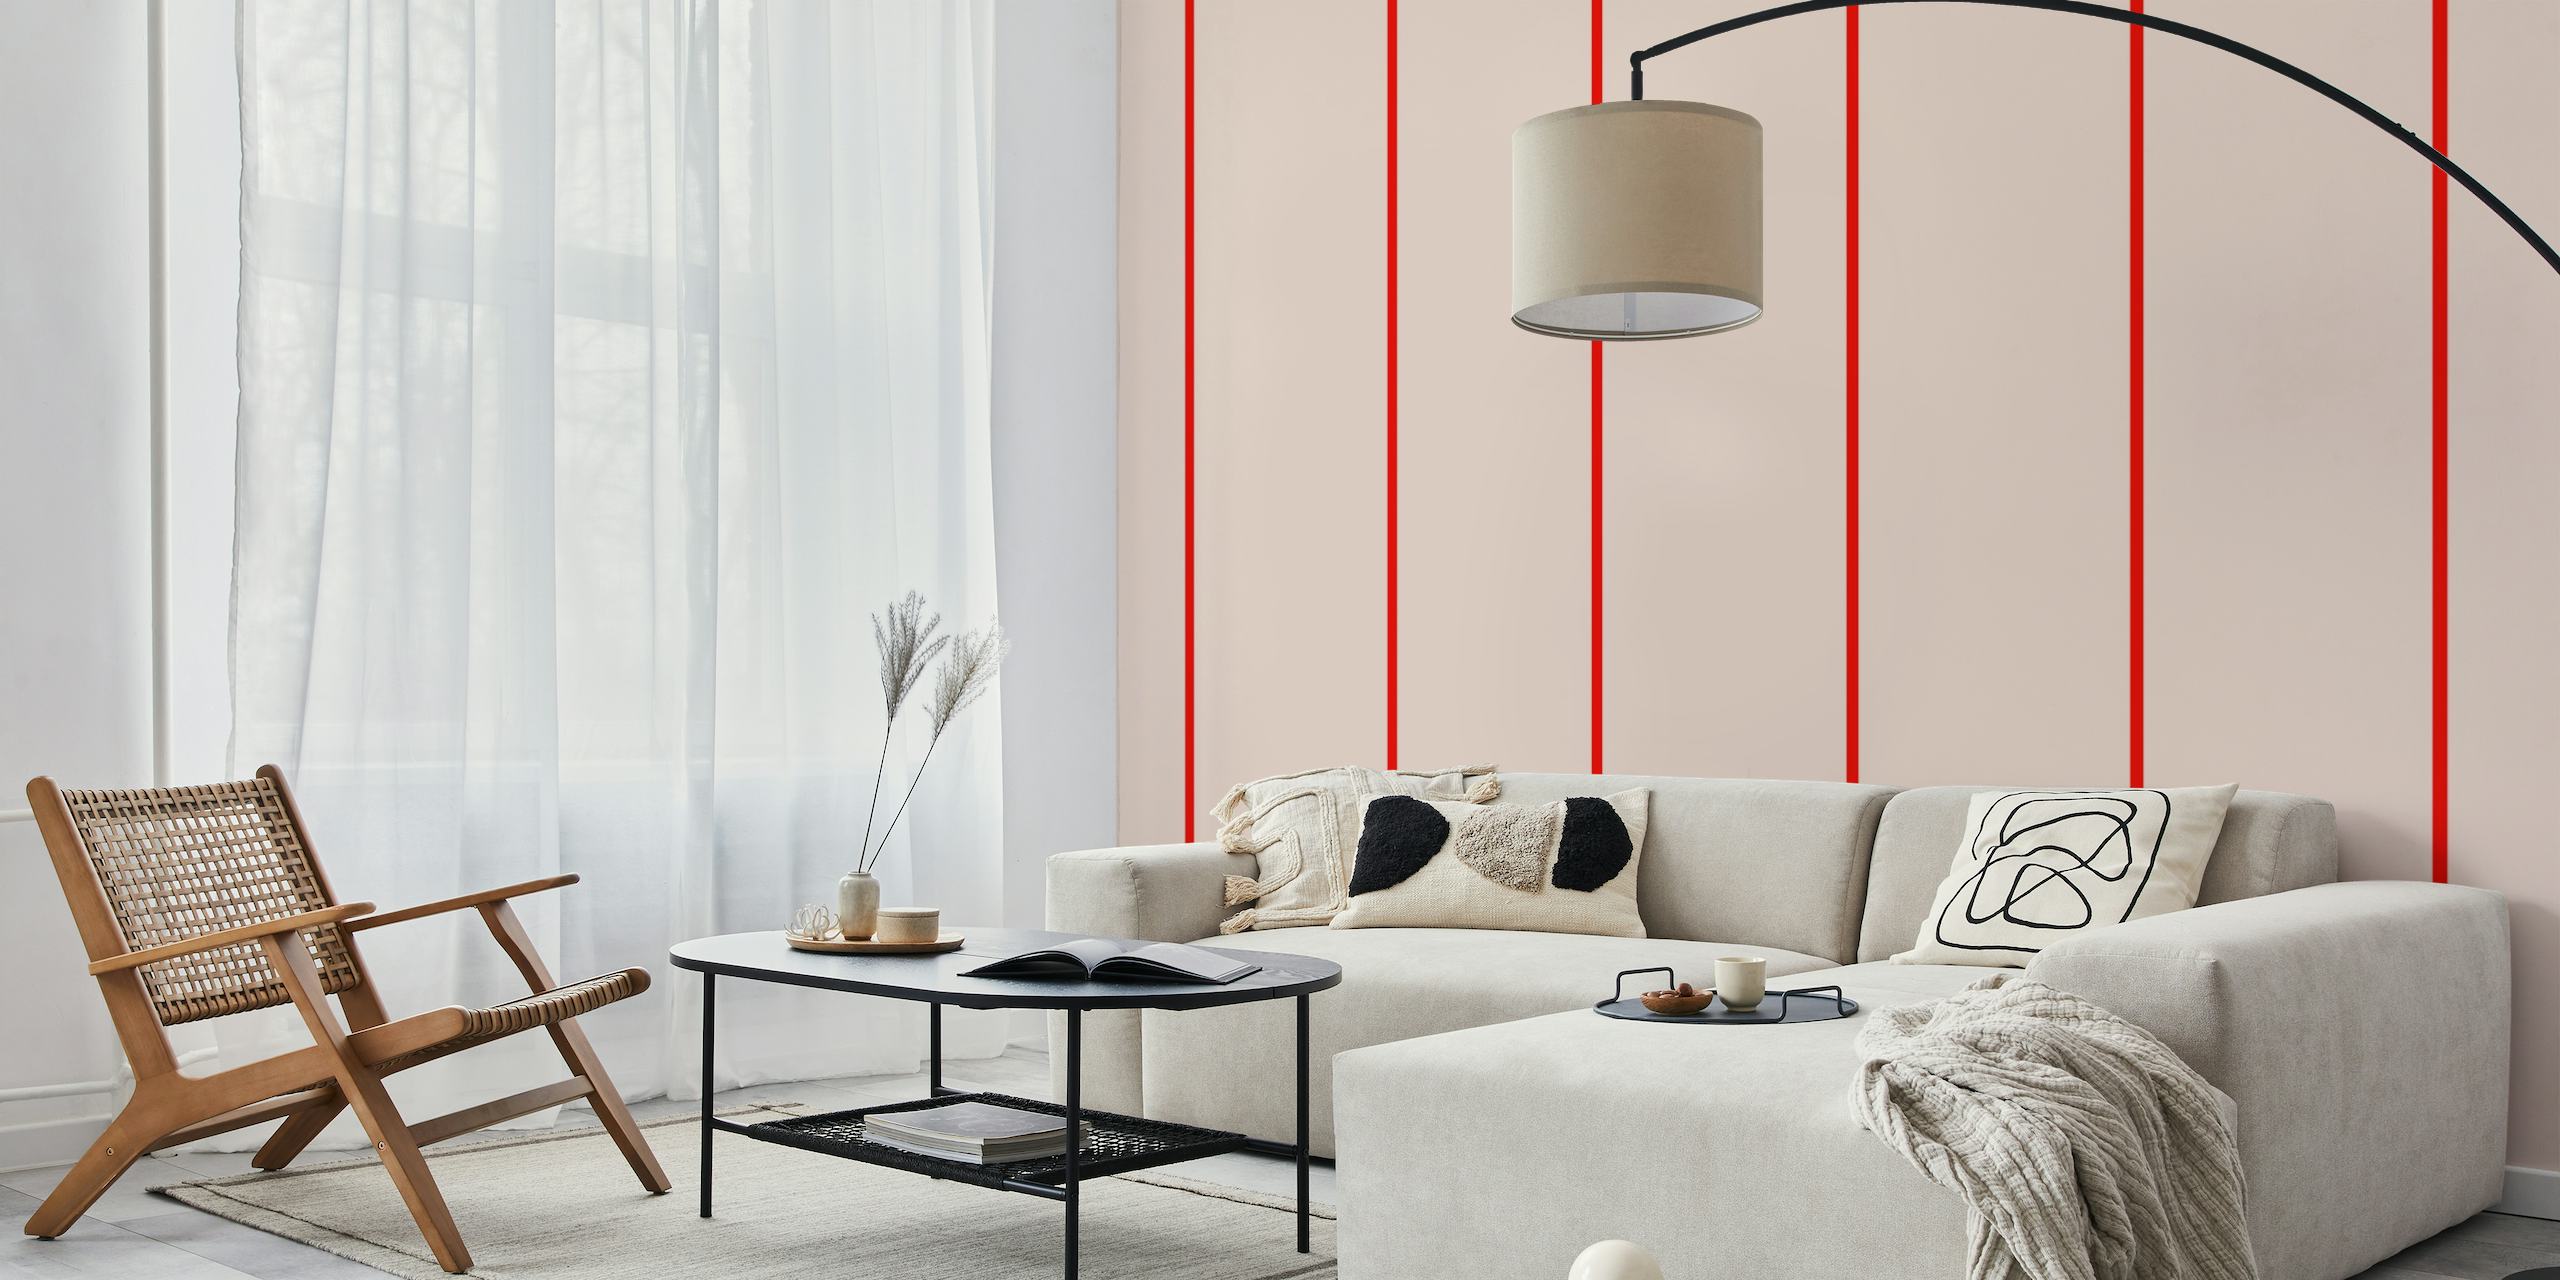 Rote streifen minimalism wallpaper